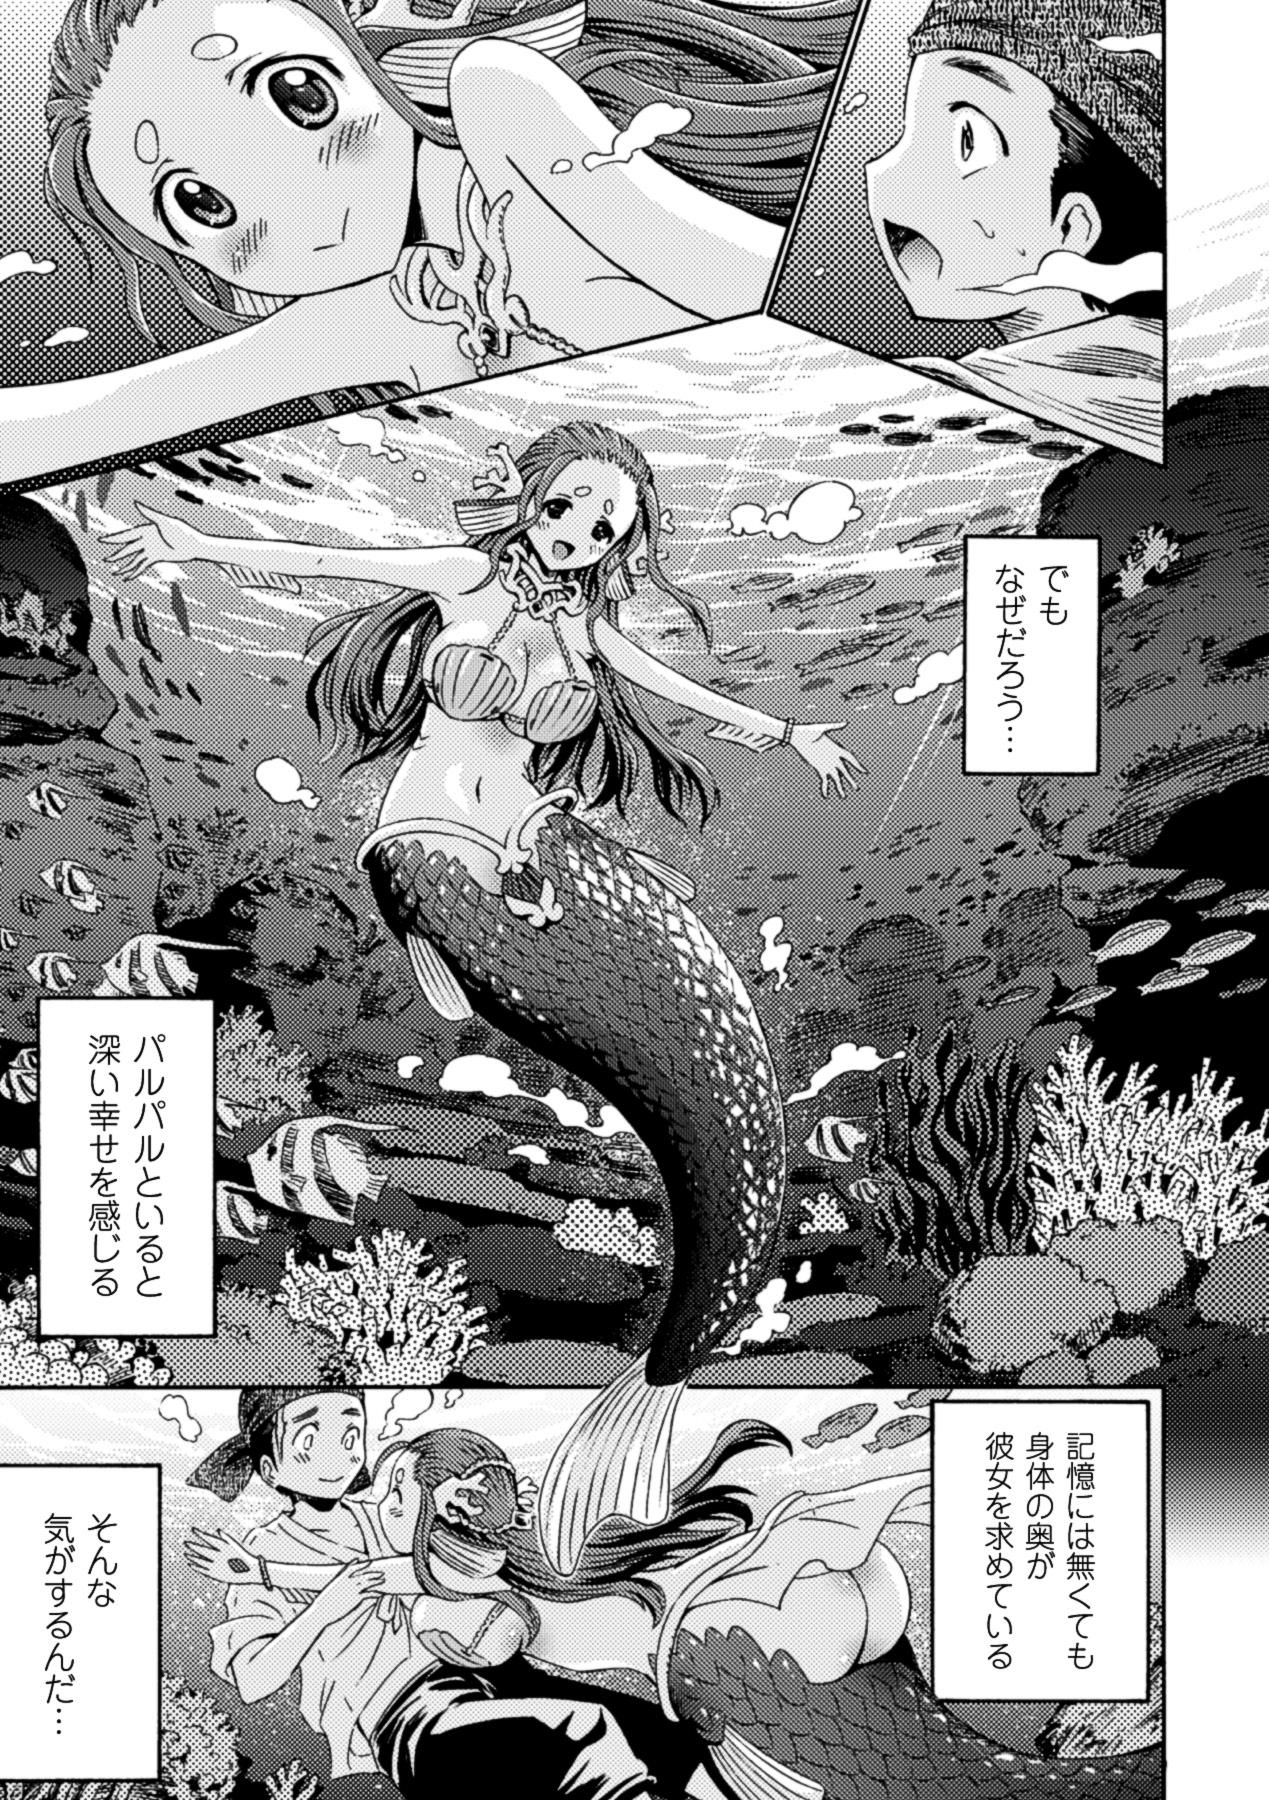 Bessatsu Comic Unreal Monster Musume Paradise Digital Ban Vol. 3 24